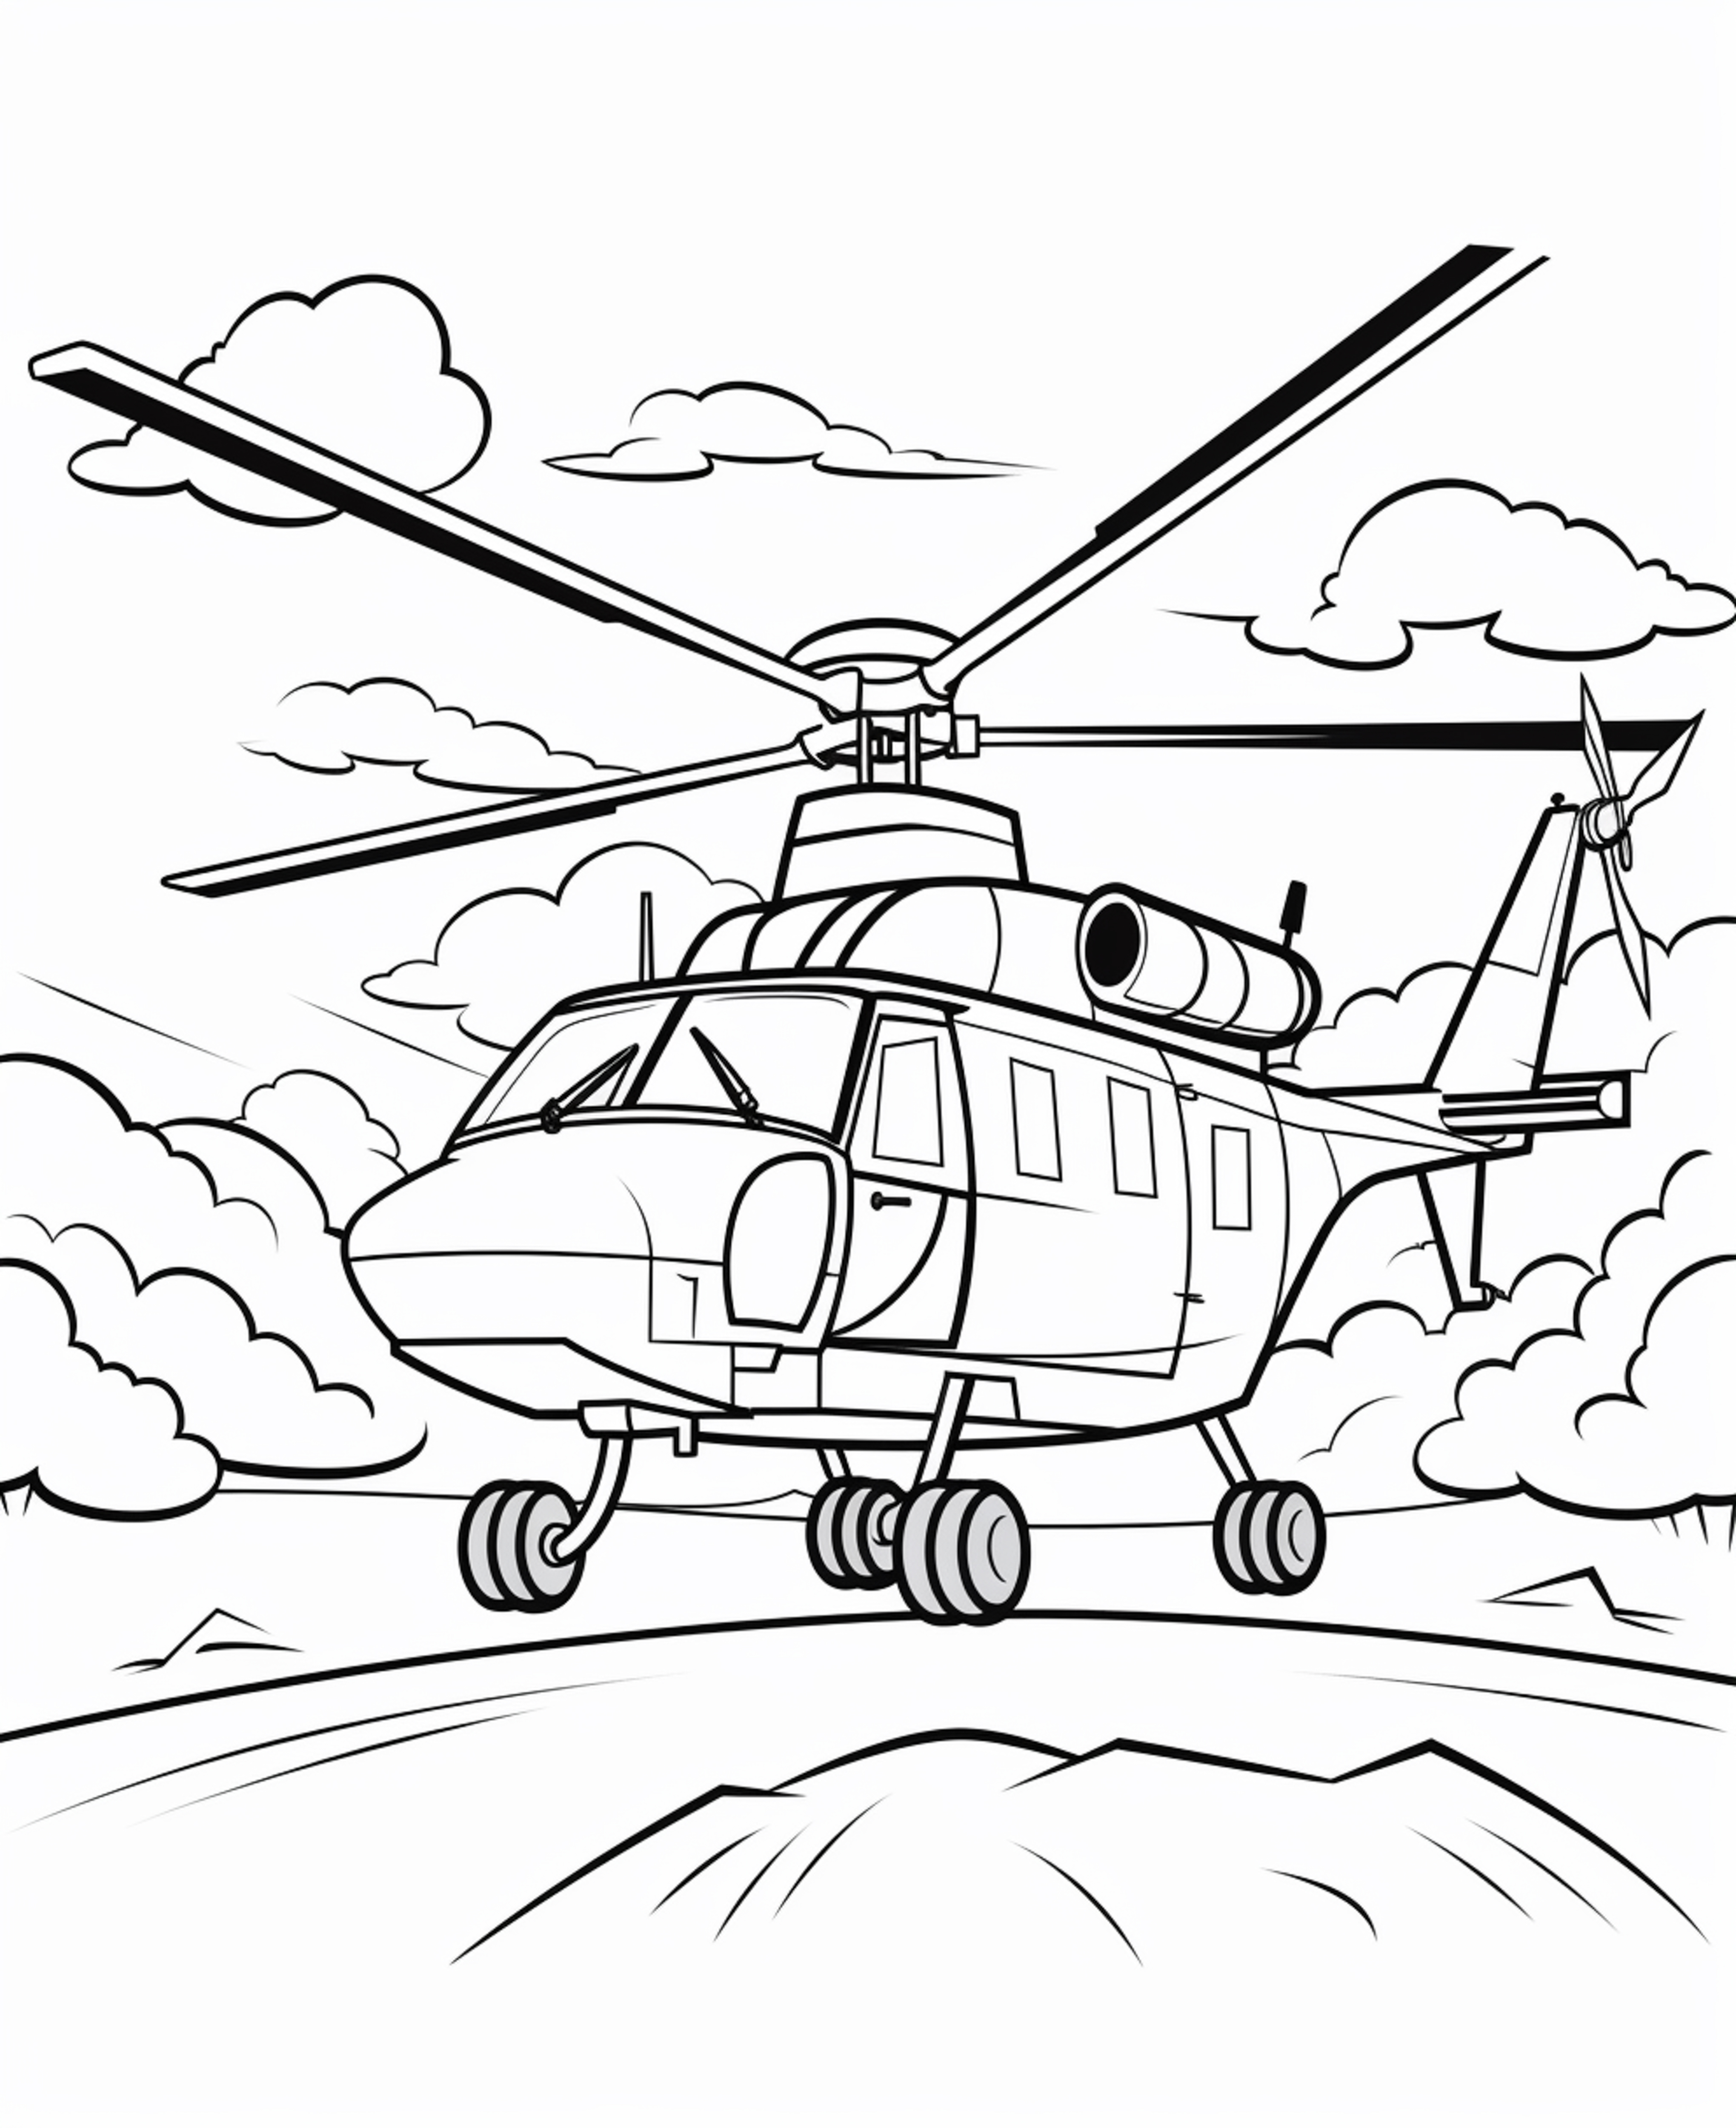 Раскраска вертолет «Крылатые мечты» формата А4 в высоком качестве